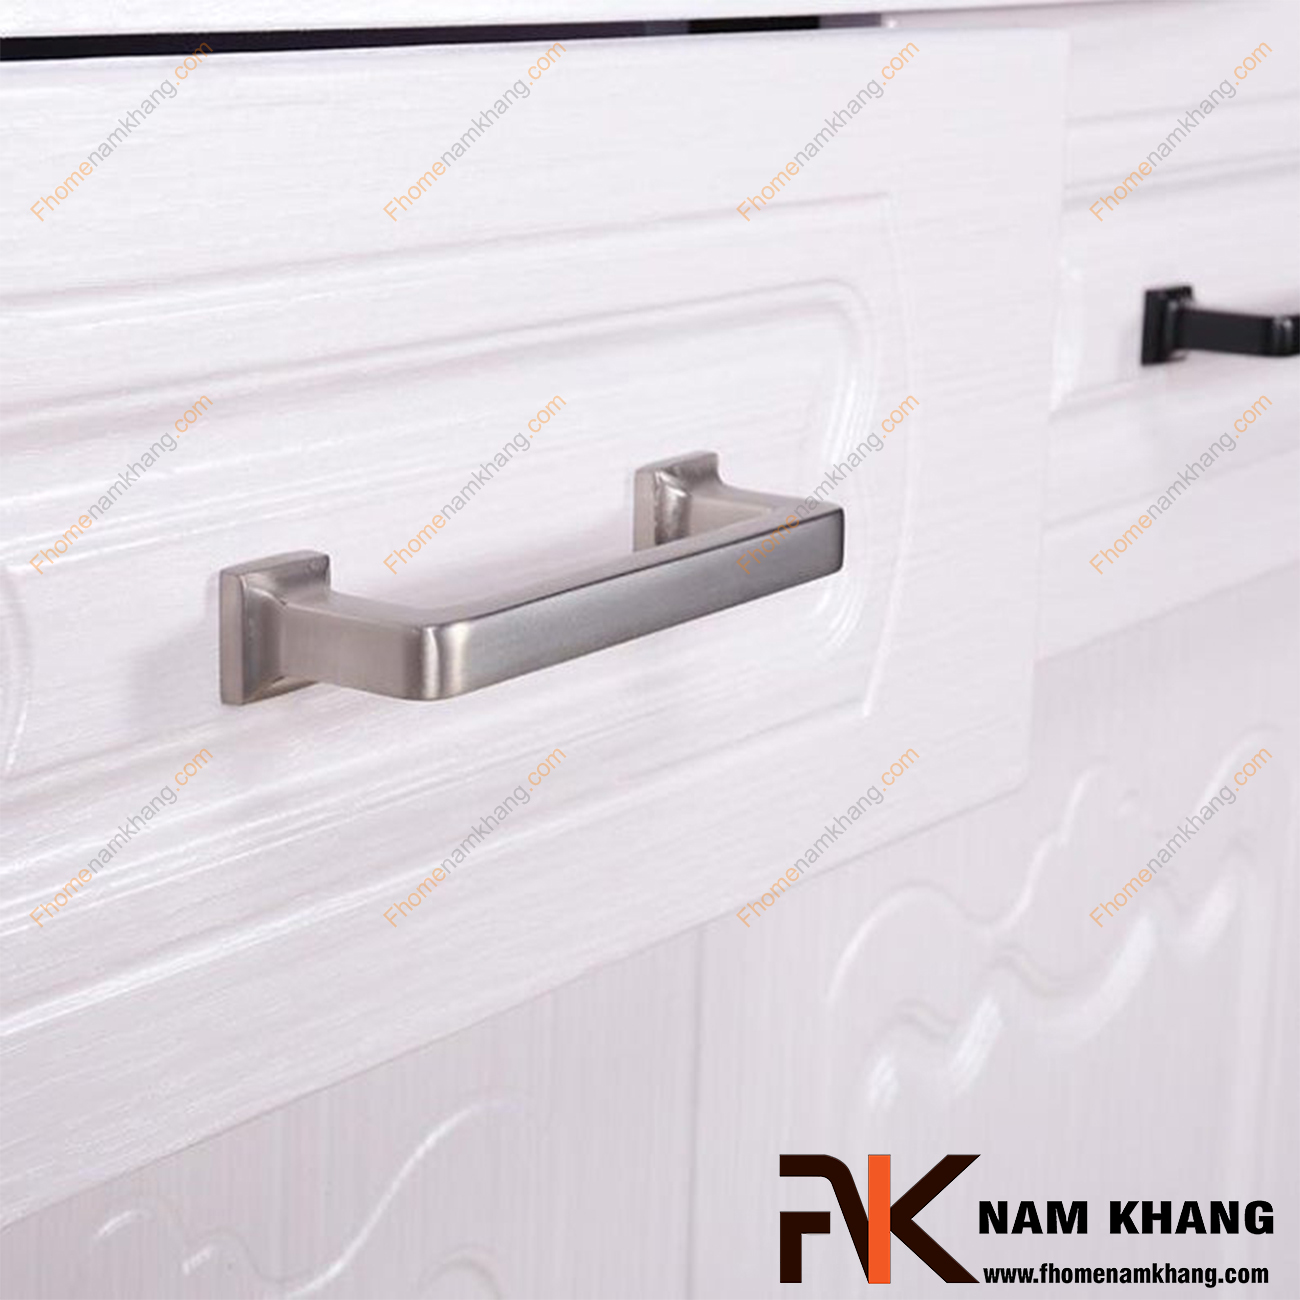 Tay nắm cửa tủ bếp màu ghi xám NK404-G là một thiết kế tay nắm tủ có thiết kế khá đơn giản. Bề ngoài của tay nắm dạng một thanh vuông nguyên khối được xử lý bo tròn các góc cạnh hiện đại. 